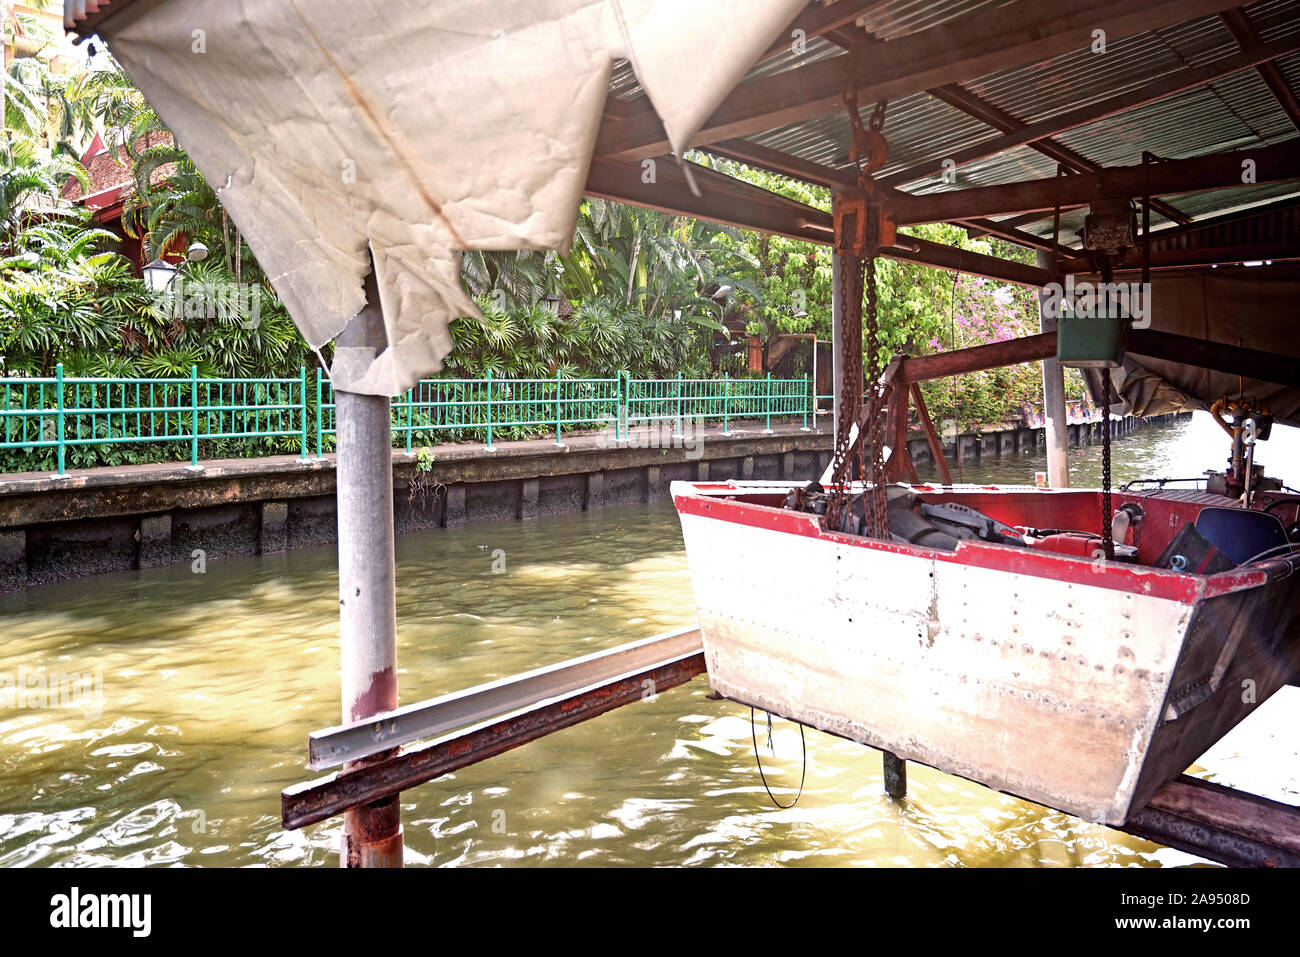 Le bateau de pêche ; temple,plantes,river village en Thaïlande Banque D'Images